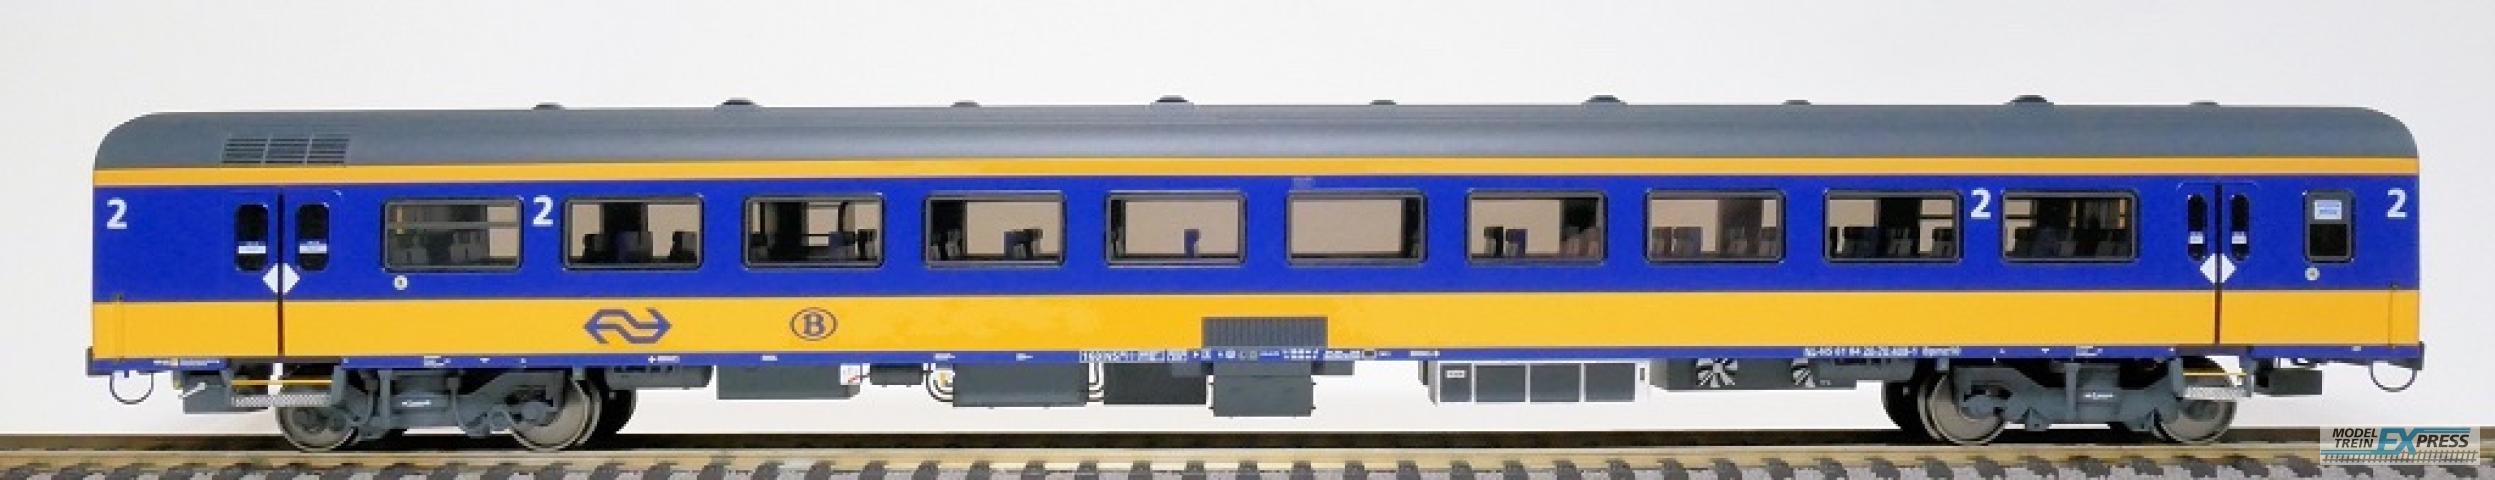 Exact-train 11025 NS ICRm Garnitur 2 (Amsterdam - Brussel) für die Hsl-Strecke eingesetzt Reisezugwagen Bpmz10 ( Farbe Gelb / Blau), Ep. VI